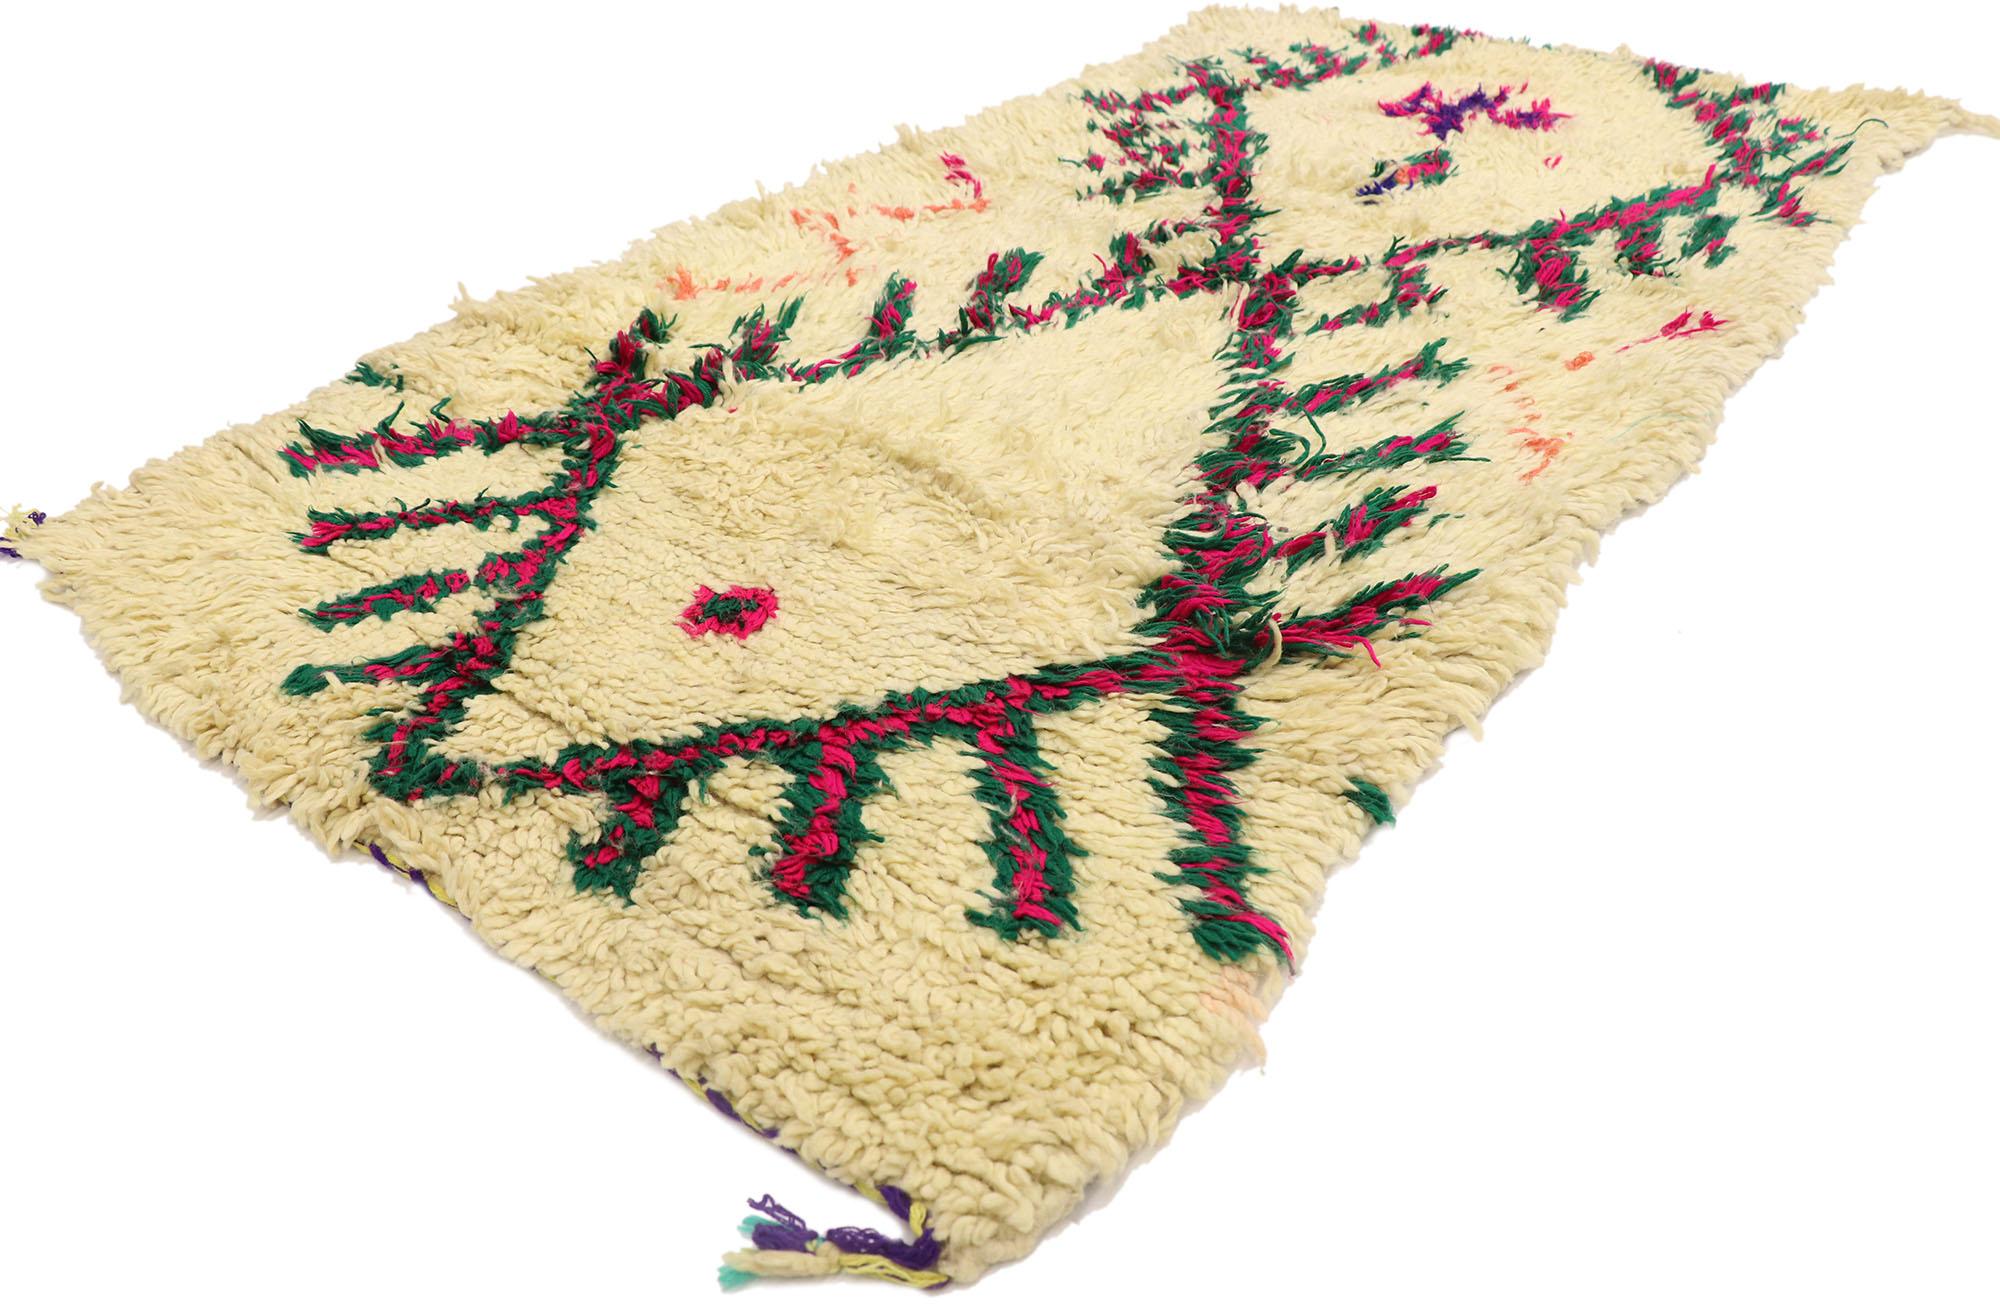 21595 Vintage Berber marokkanischen Azilal Teppich mit Bohemian Tribal Style 02'11 x 06'10. Dieser handgeknüpfte marokkanische Azilal-Teppich aus alter Berberwolle mit seinem kühnen, ausdrucksstarken Stammesmuster, seinen unglaublichen Details und